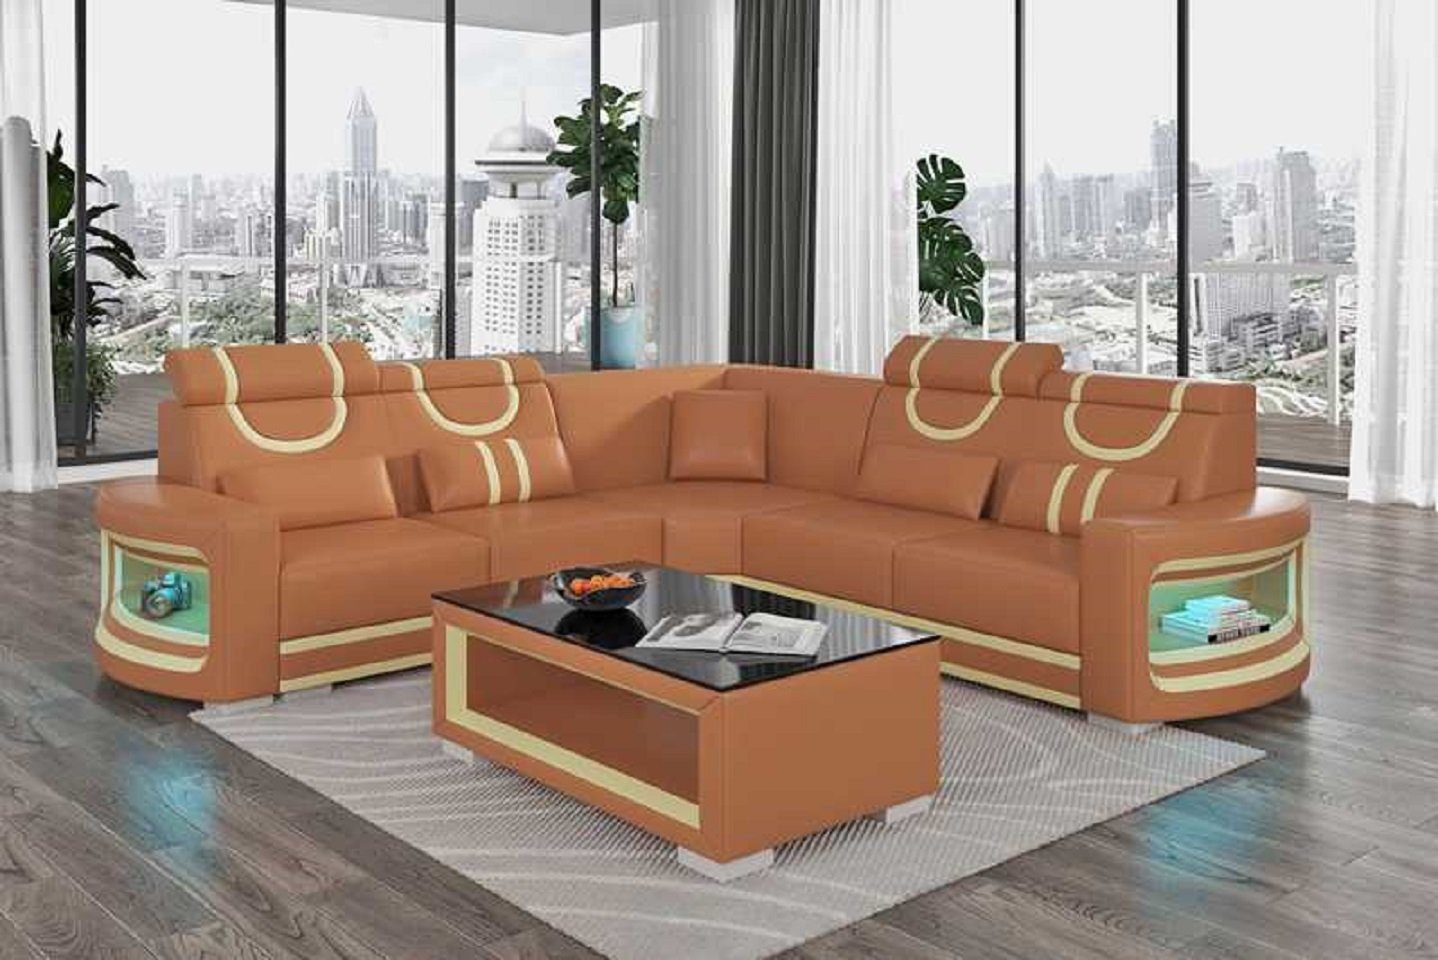 JVmoebel Ecksofa Modern Ecksofa Luxus L Form Couch Sofa Wohnzimmer Design Neu, 3 Teile, Made in Europe Braun